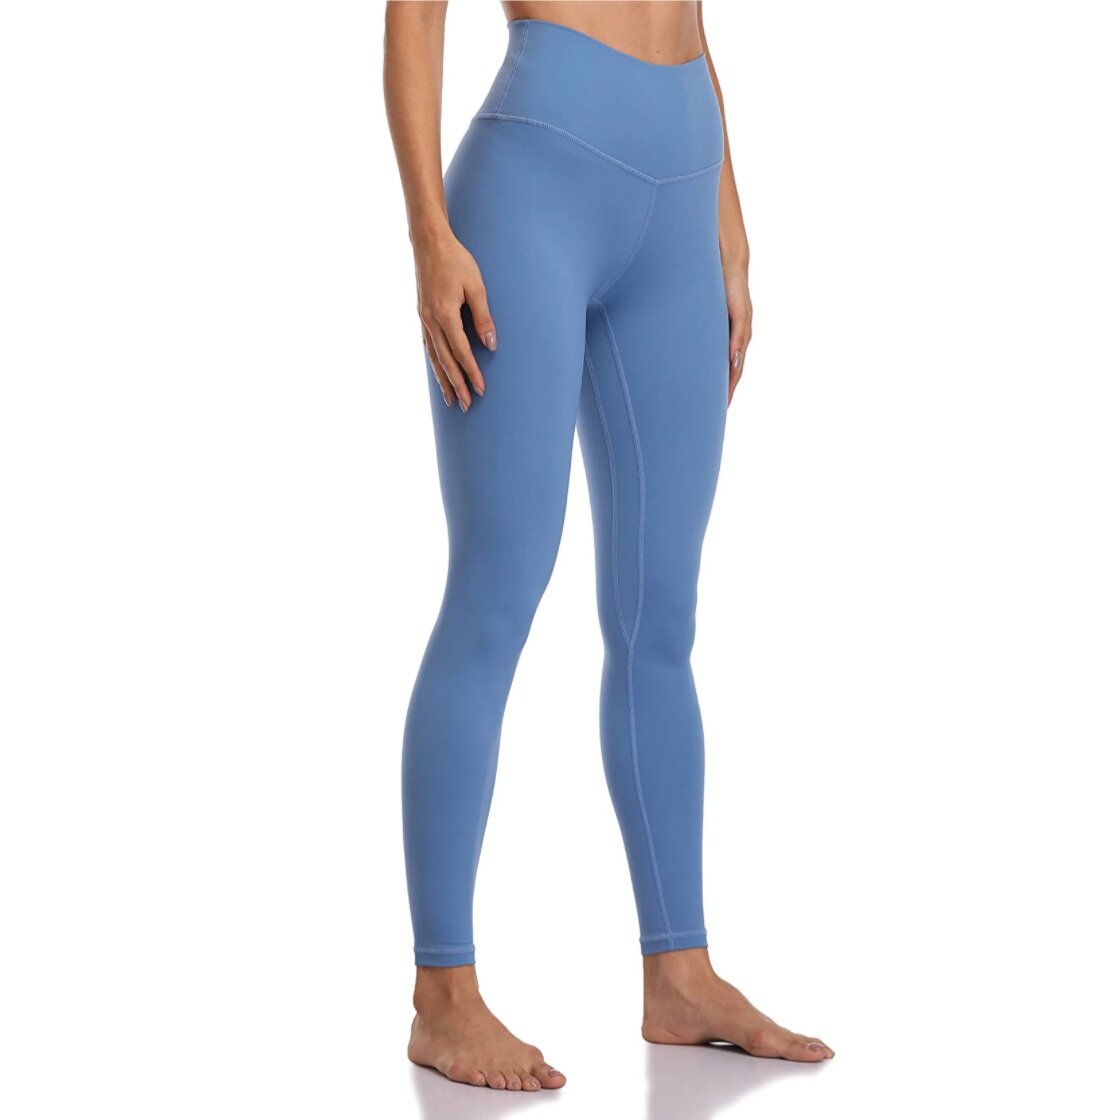 Colorfulkoala Yoga Pants ($22.99)